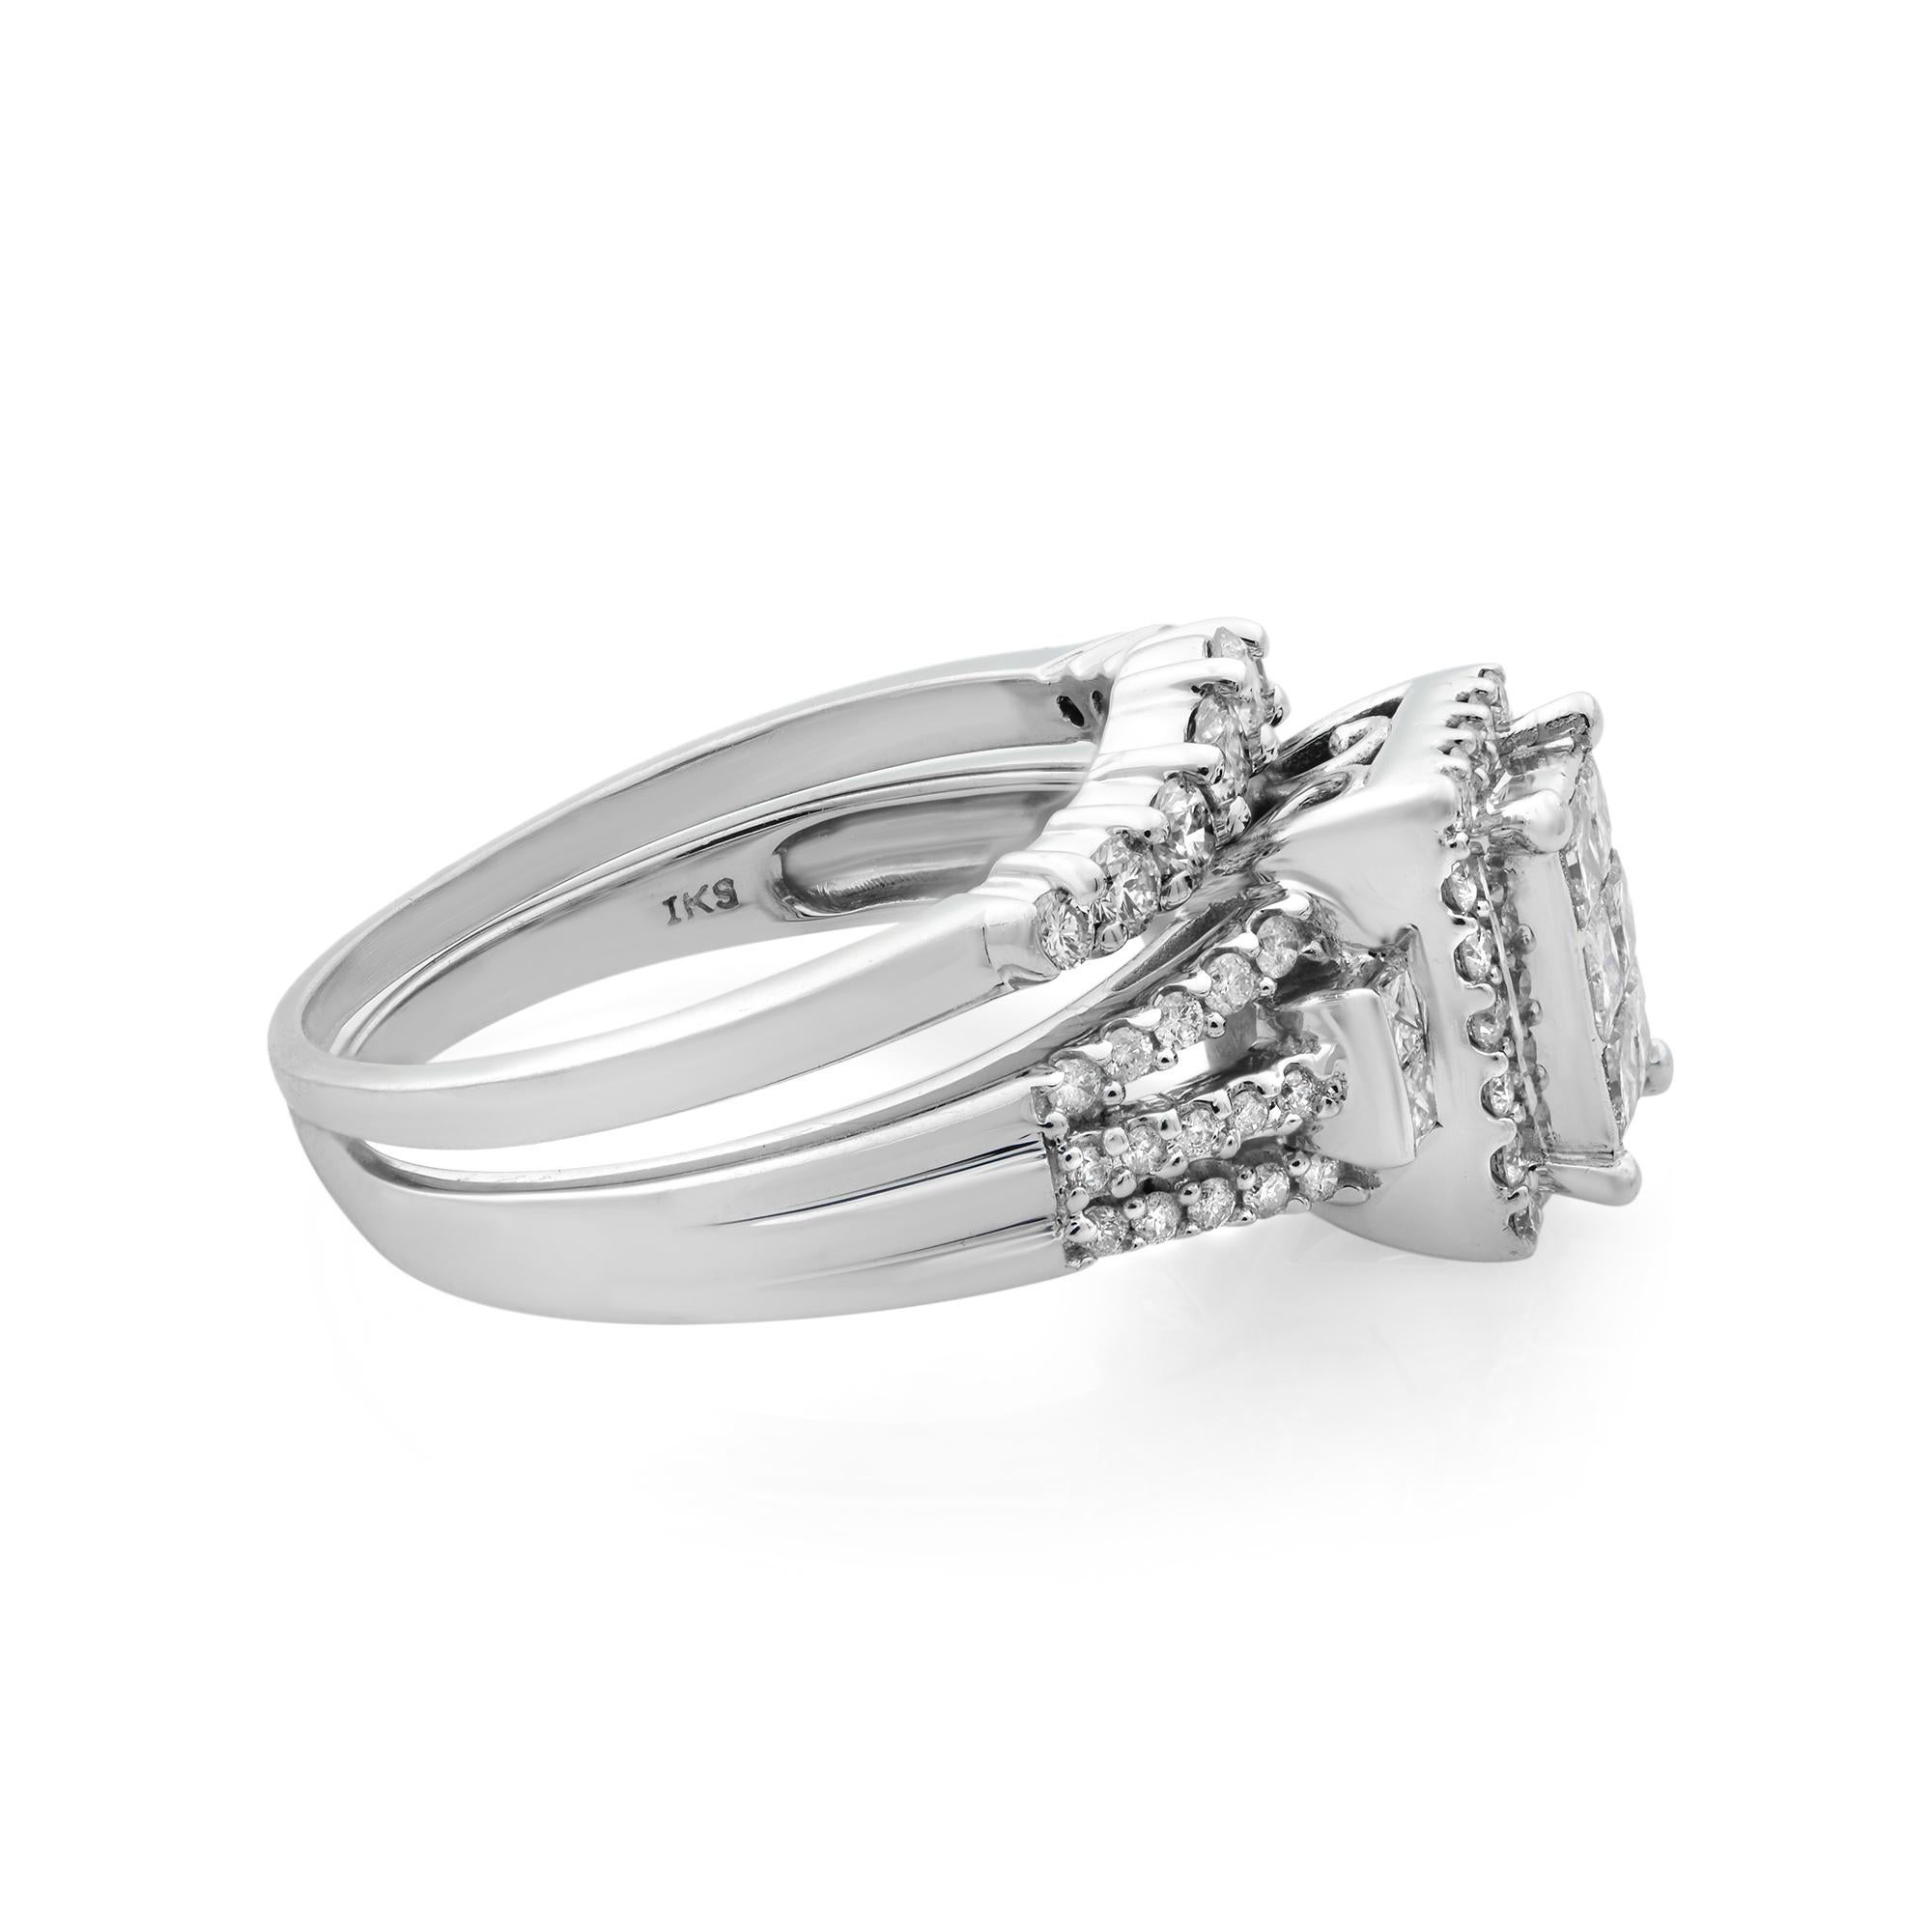 Rachel Koen Diamond Engagement Set of Rings 14K White Gold 1.5cttw For Sale 1